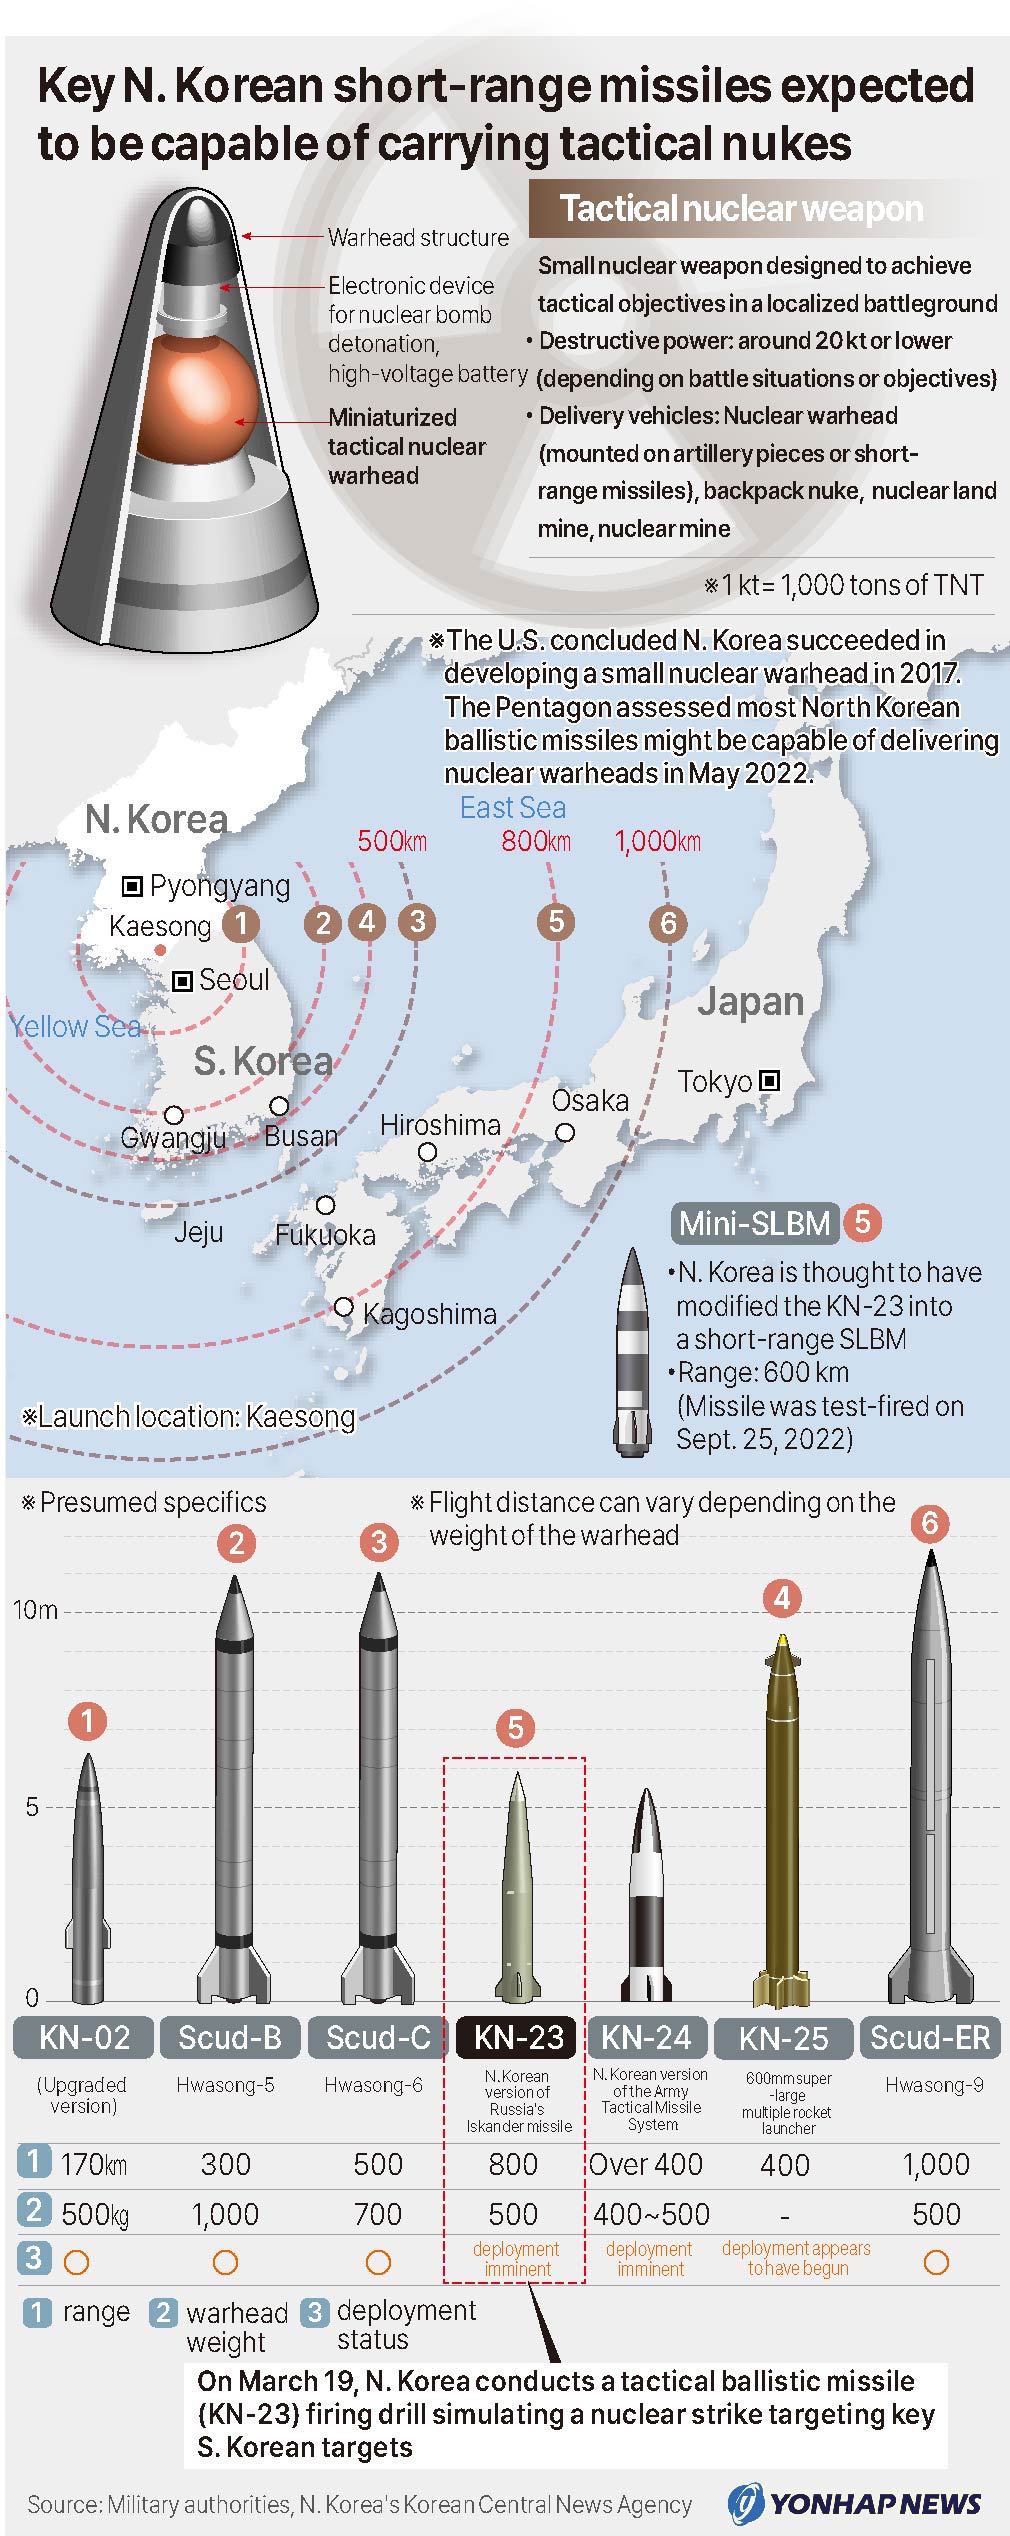 Key N. Korean short-range missiles expected